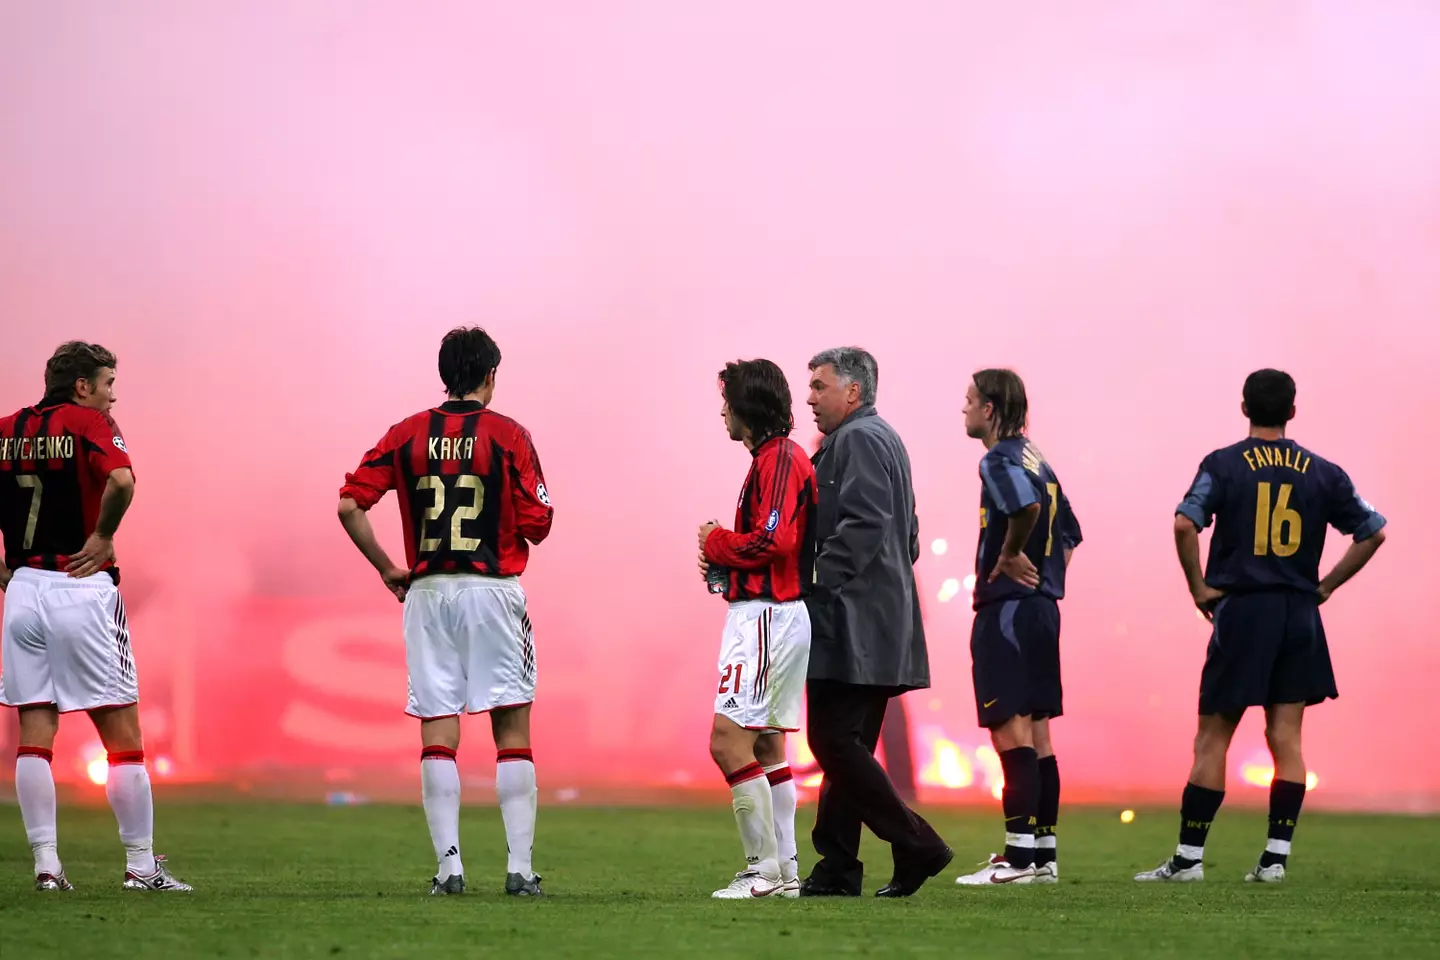 Play stopped during Inter Milan vs AC Milan in 2005